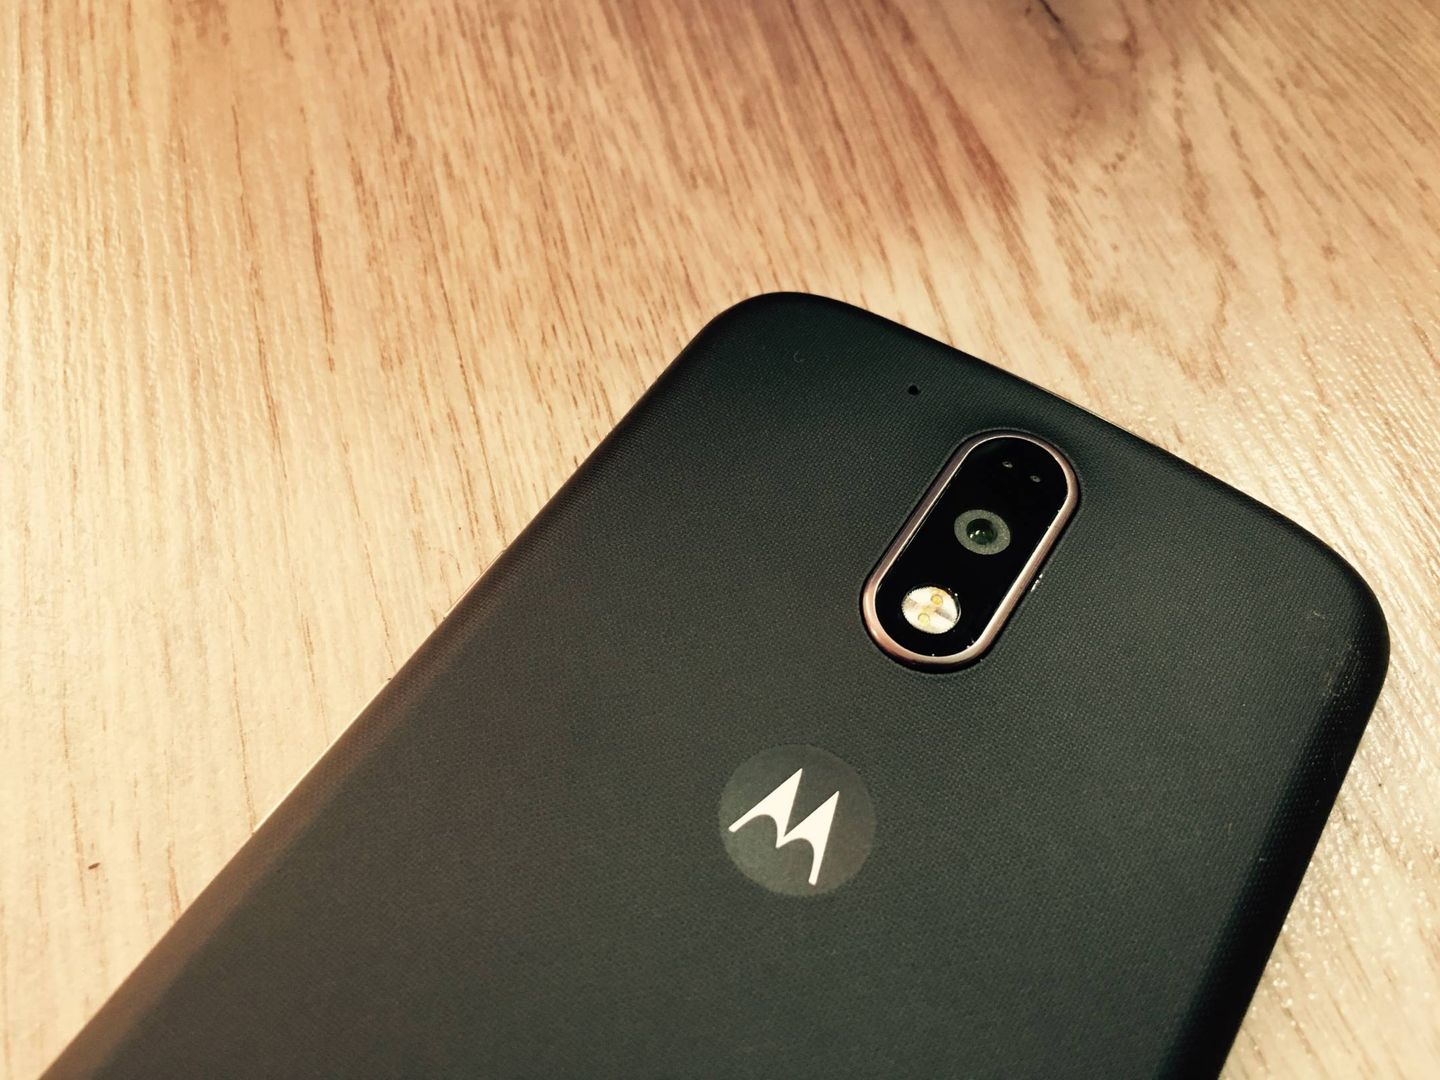 Los acabados del Moto G4 recuerdan que es un teléfono de gama baja. (J. E.)